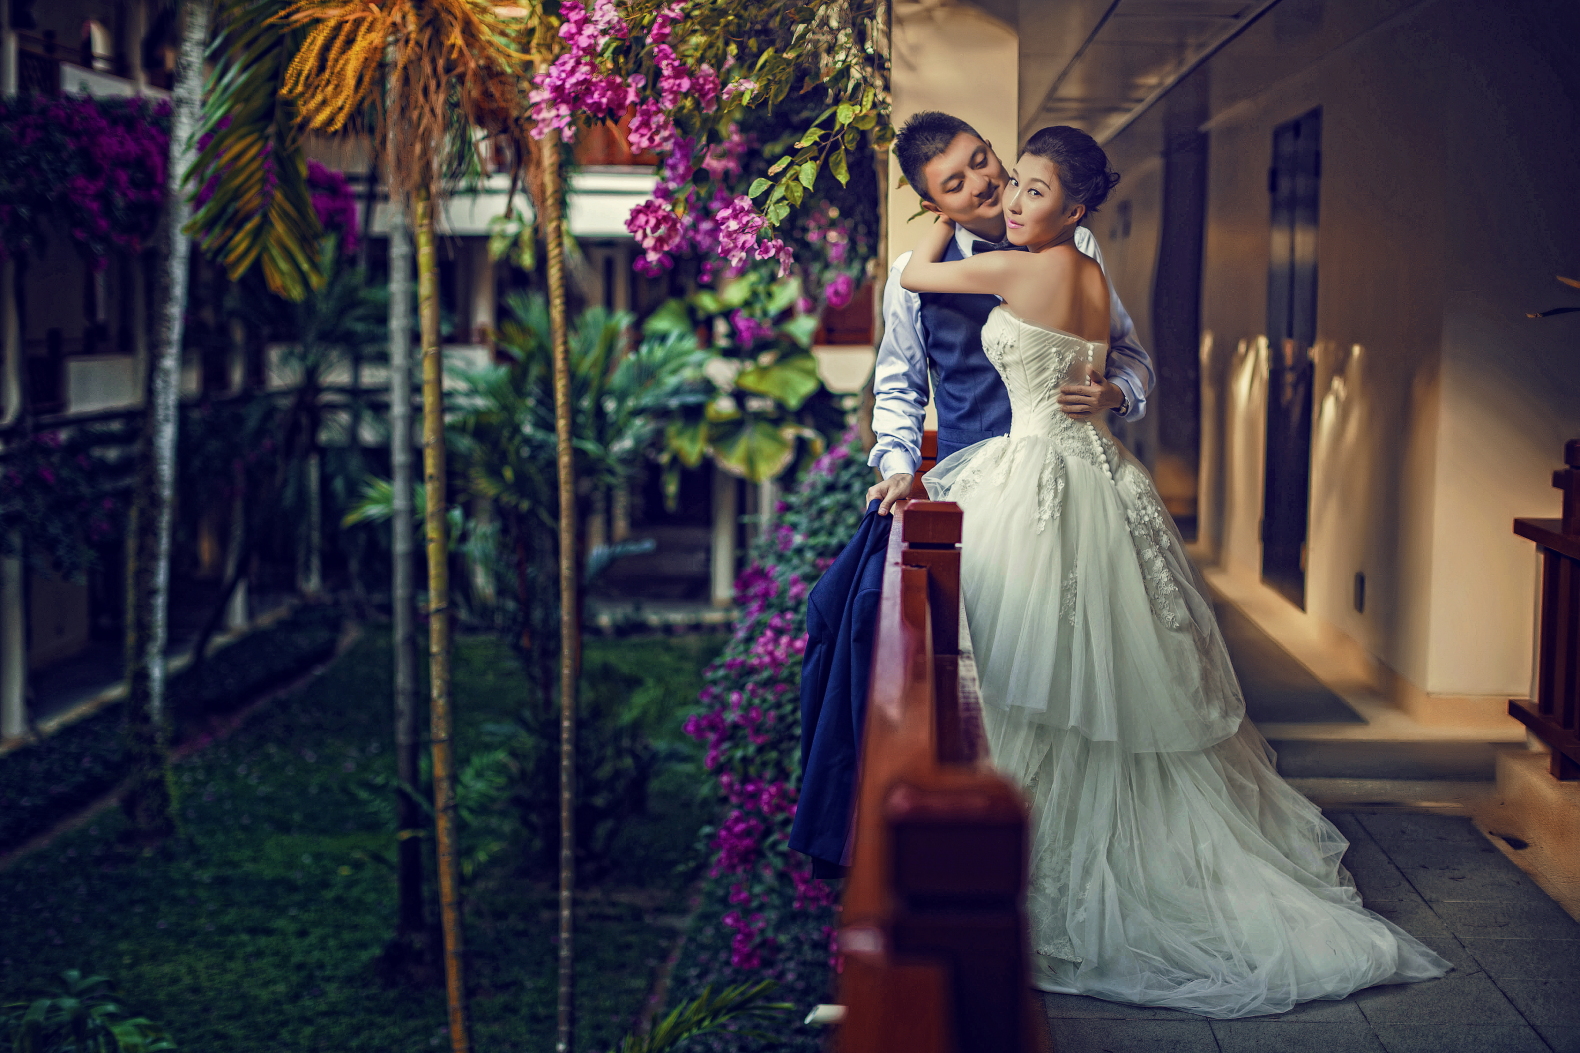 曼谷婚纱_泰国曼谷图片